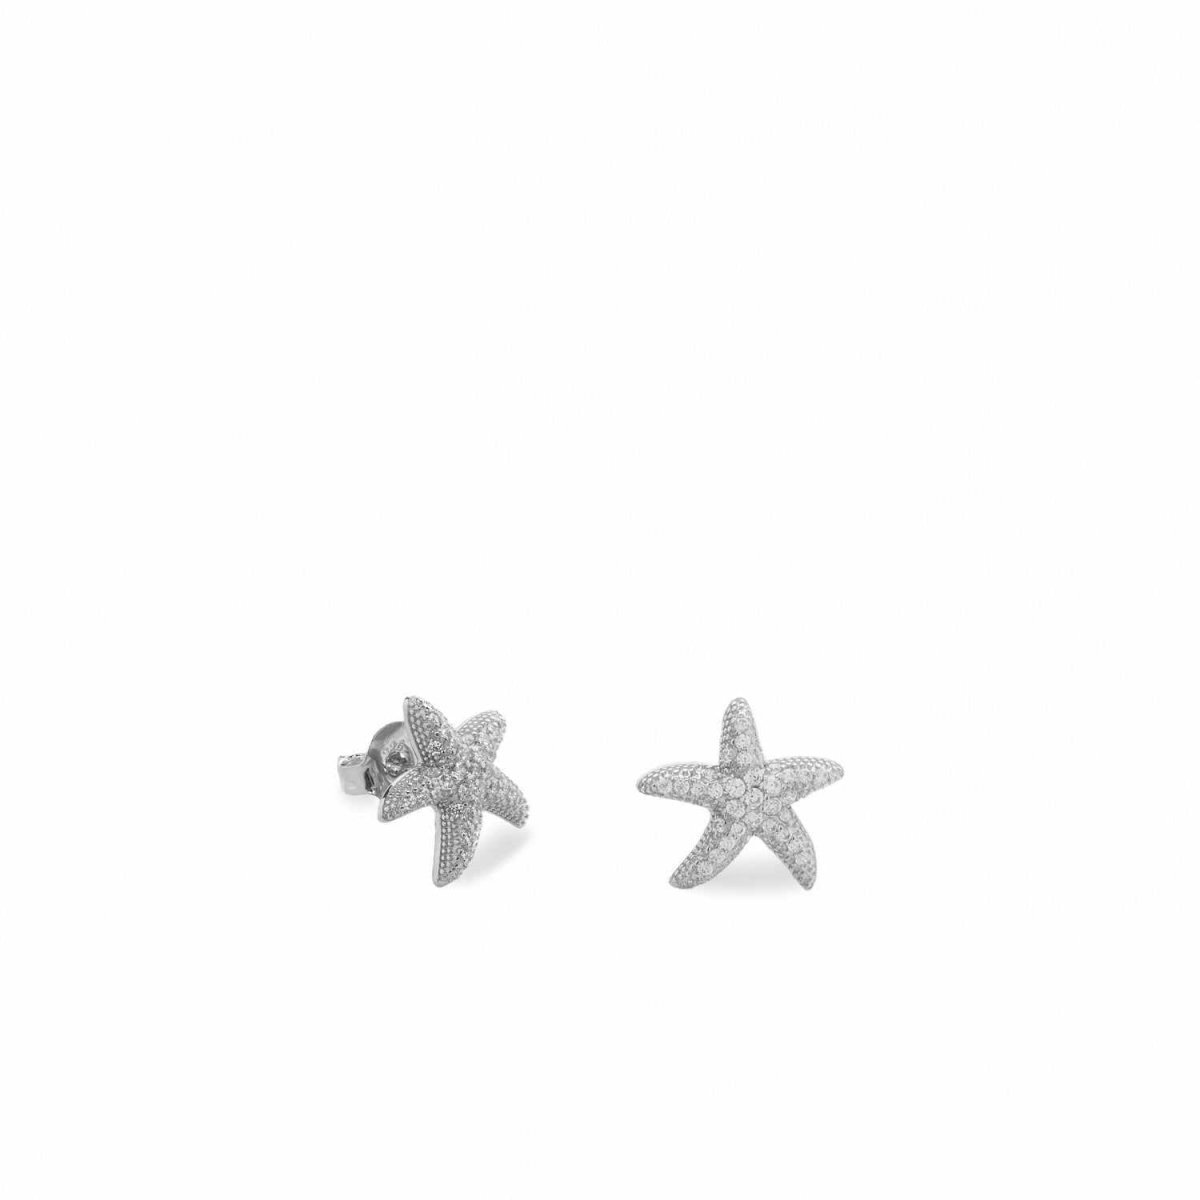 Pendiente · Pendientes pequeños de plata motivo estrella de mar